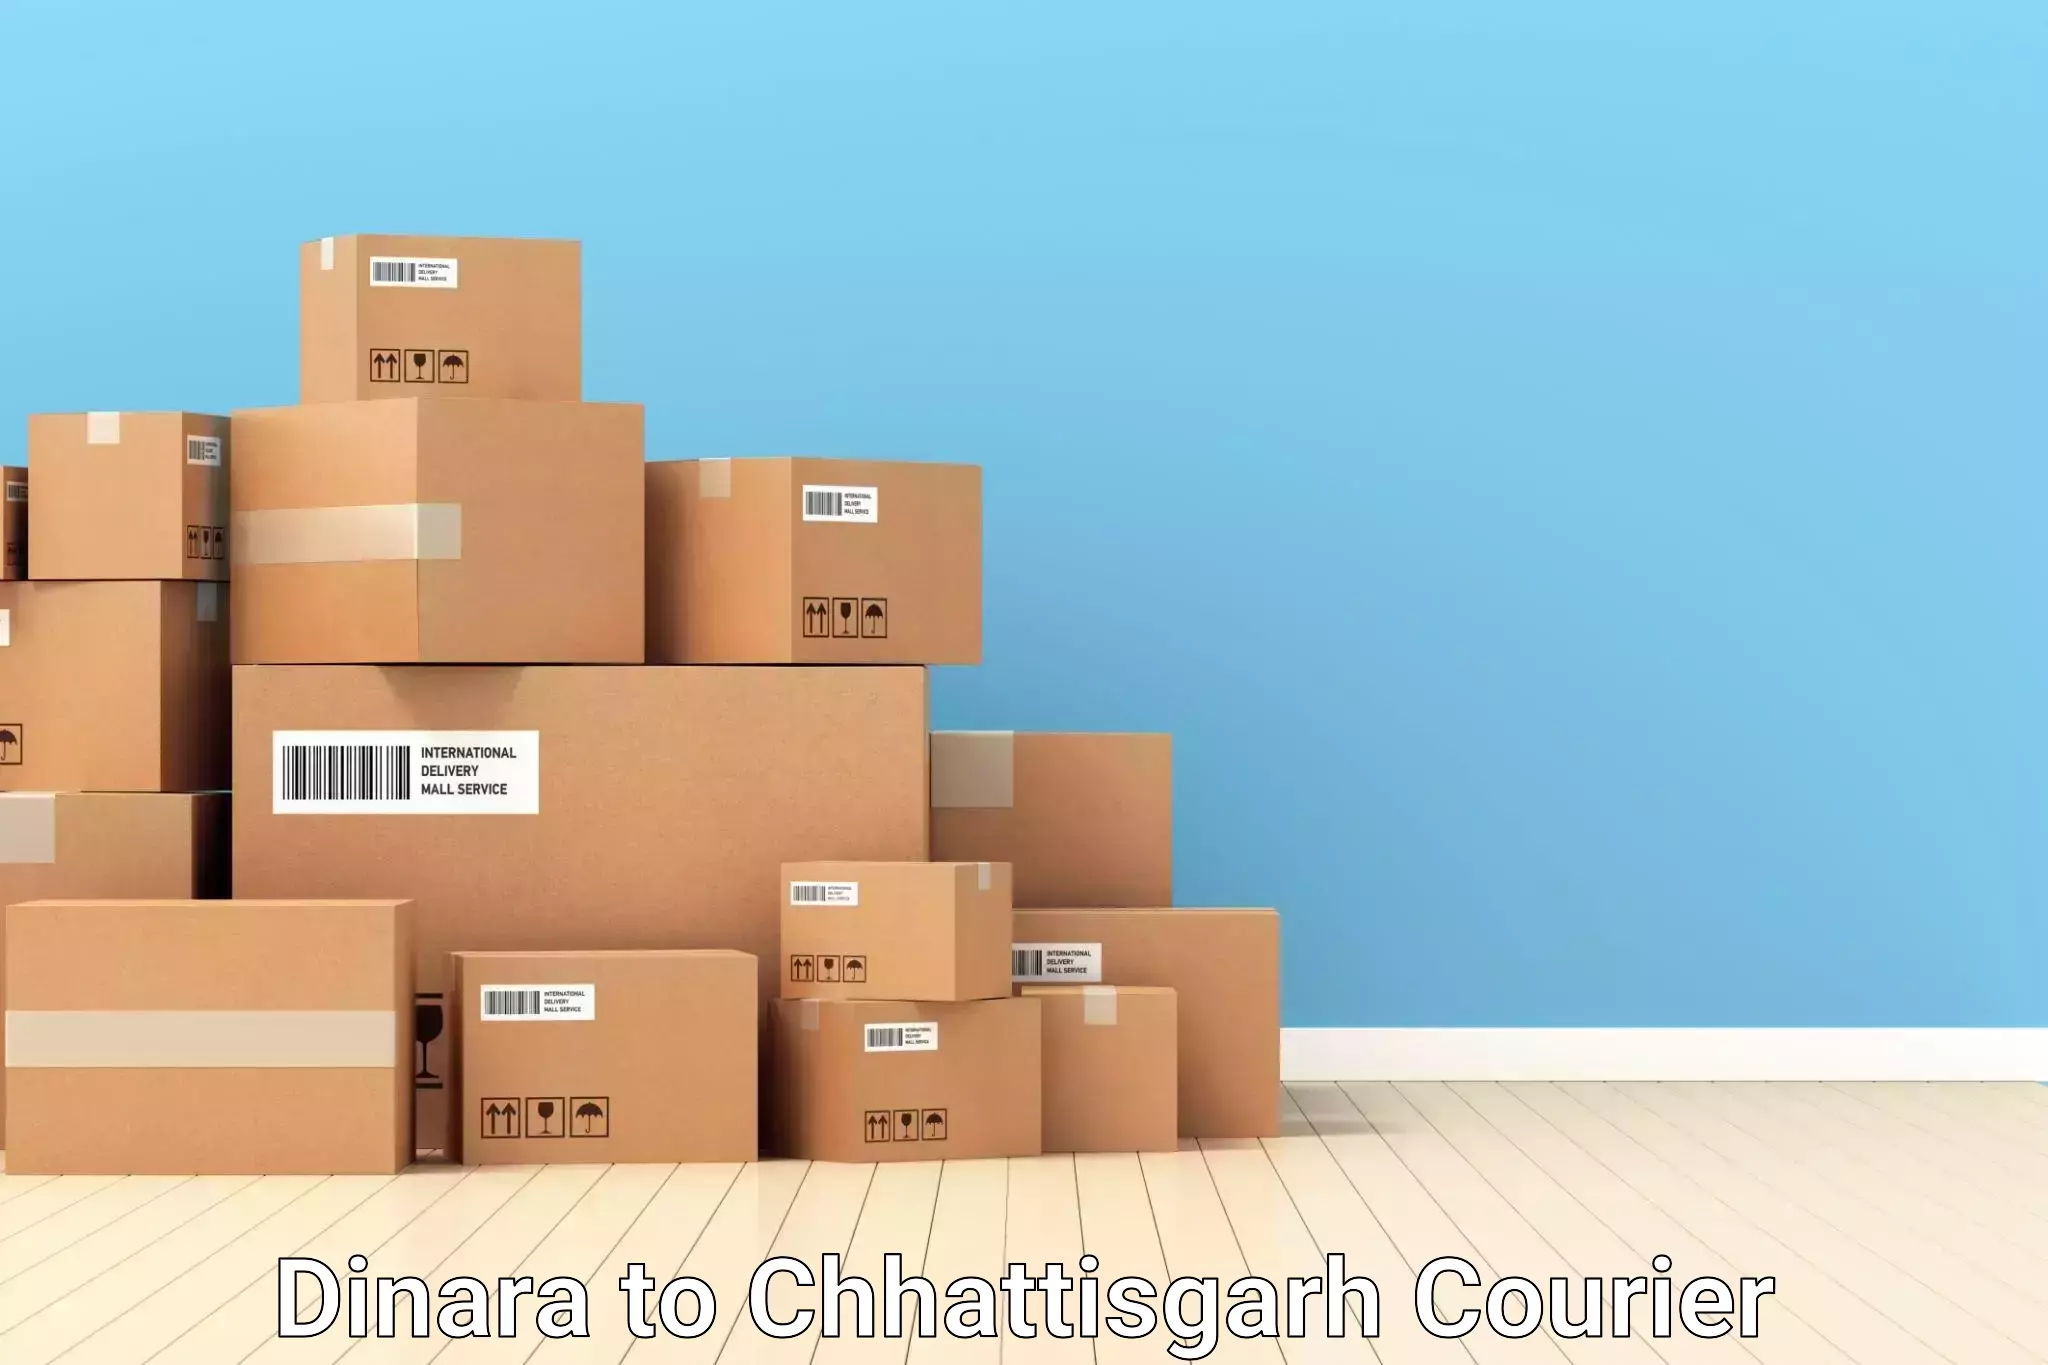 Luggage delivery optimization in Dinara to Raigarh Chhattisgarh